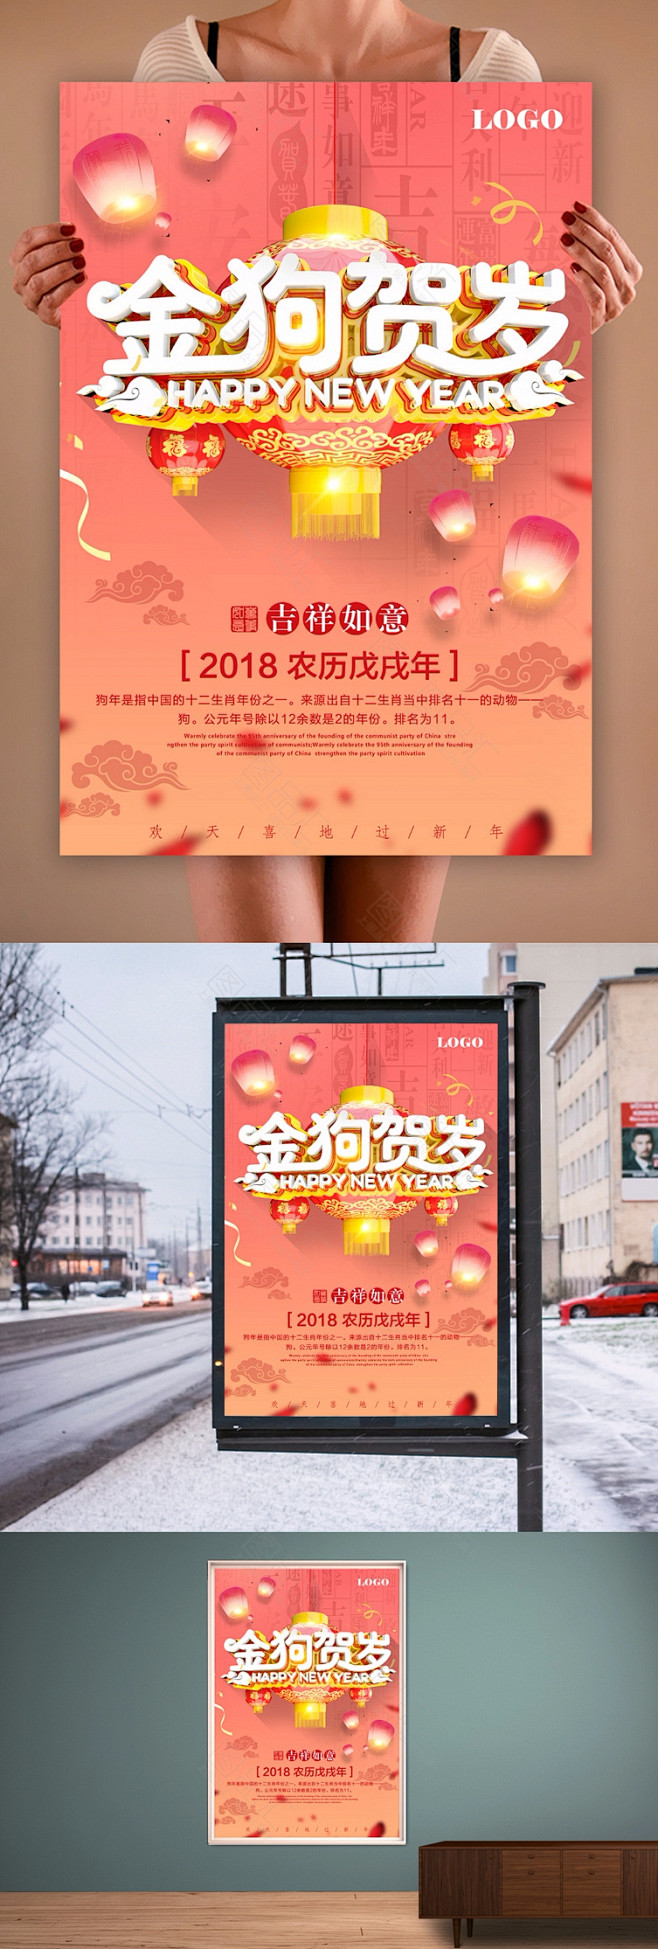 金狗贺岁新年海报设计 新年 春节 新年海...